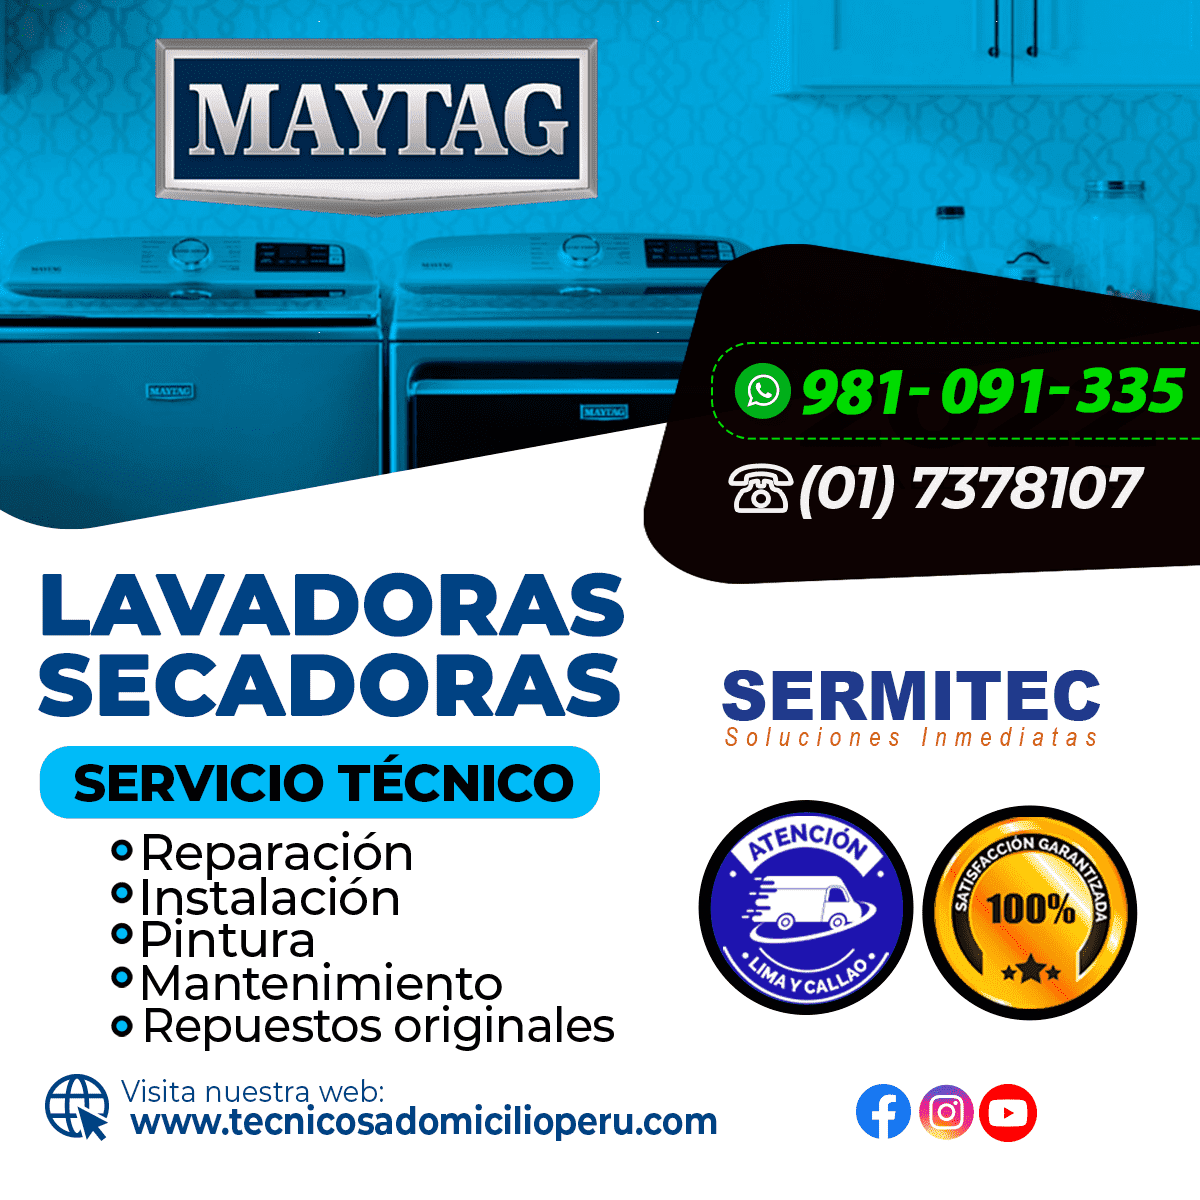 Maytag Reparación de Lavadoras 981091335  SAN LUIS